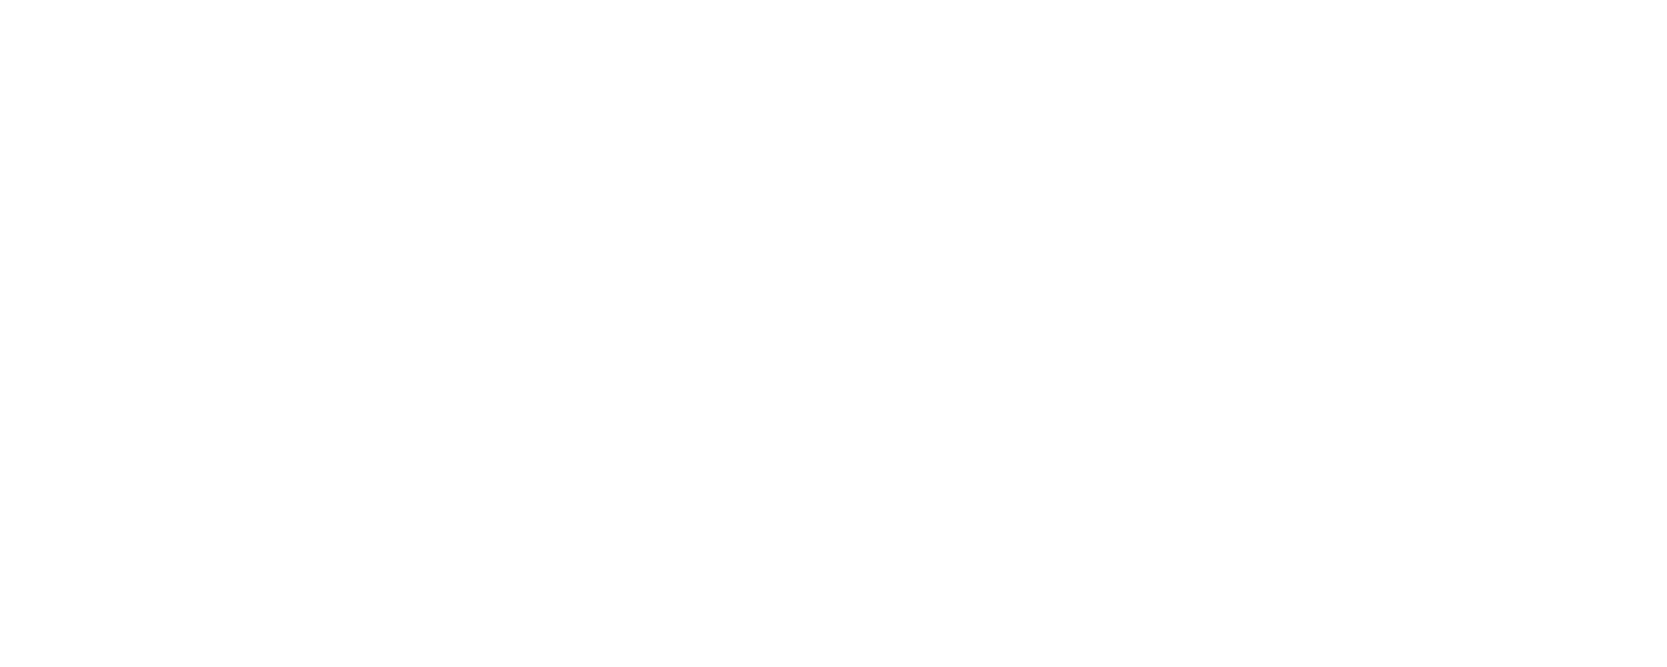 TFG 7 Emirates Cycle Challenge